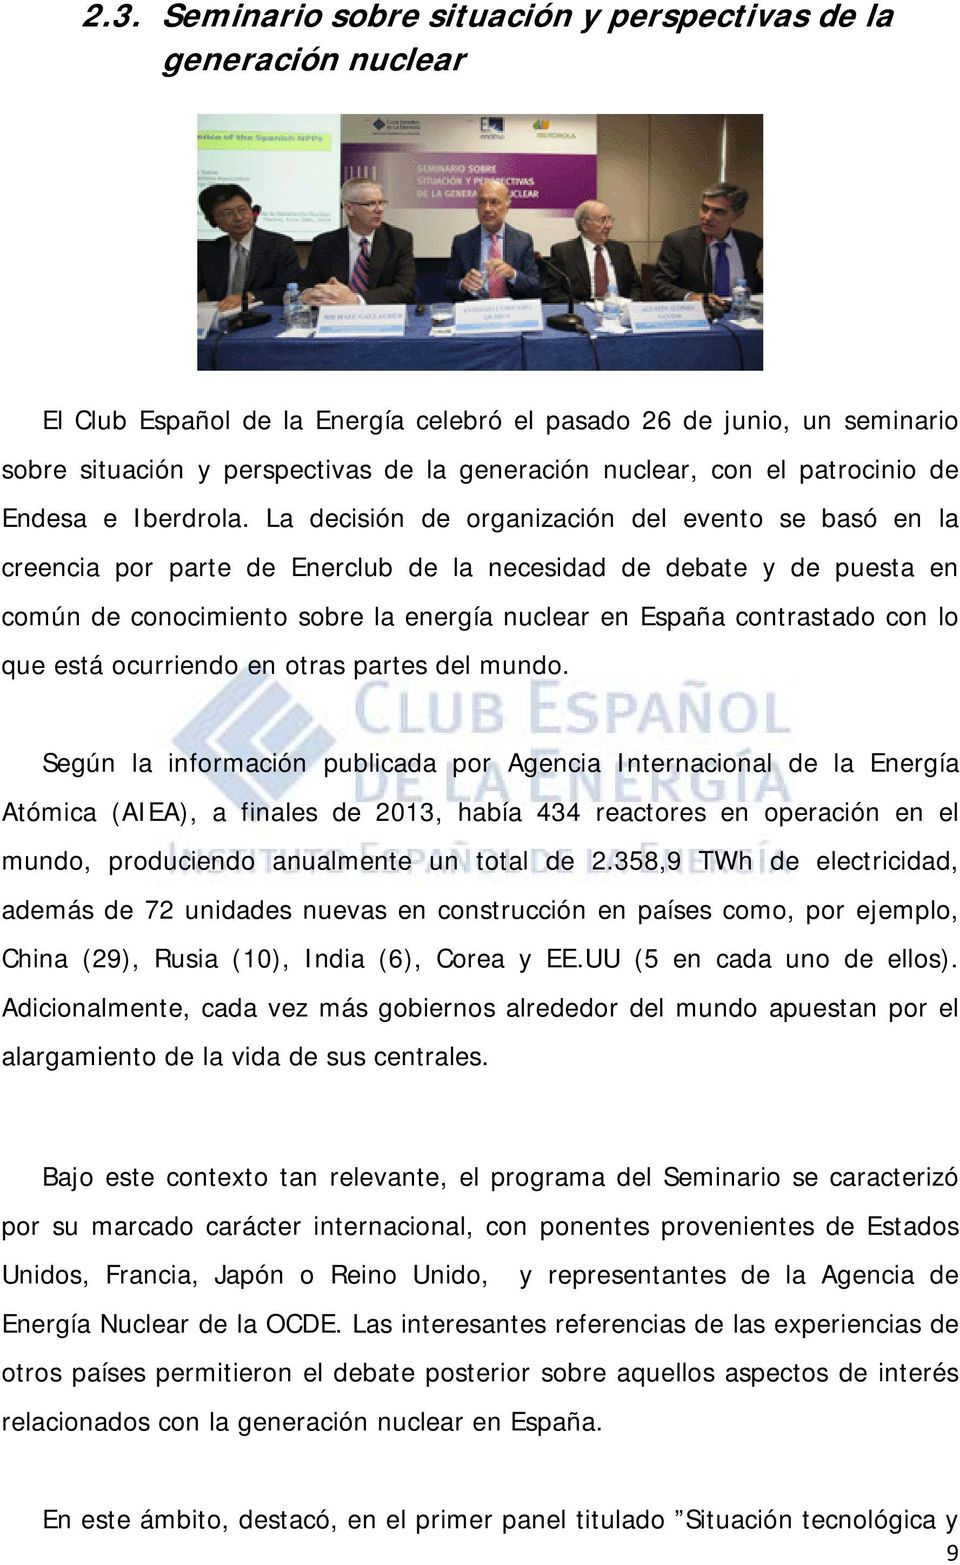 La decisión de organización del evento se basó en la creencia por parte de Enerclub de la necesidad de debate y de puesta en común de conocimiento sobre la energía nuclear en España contrastado con